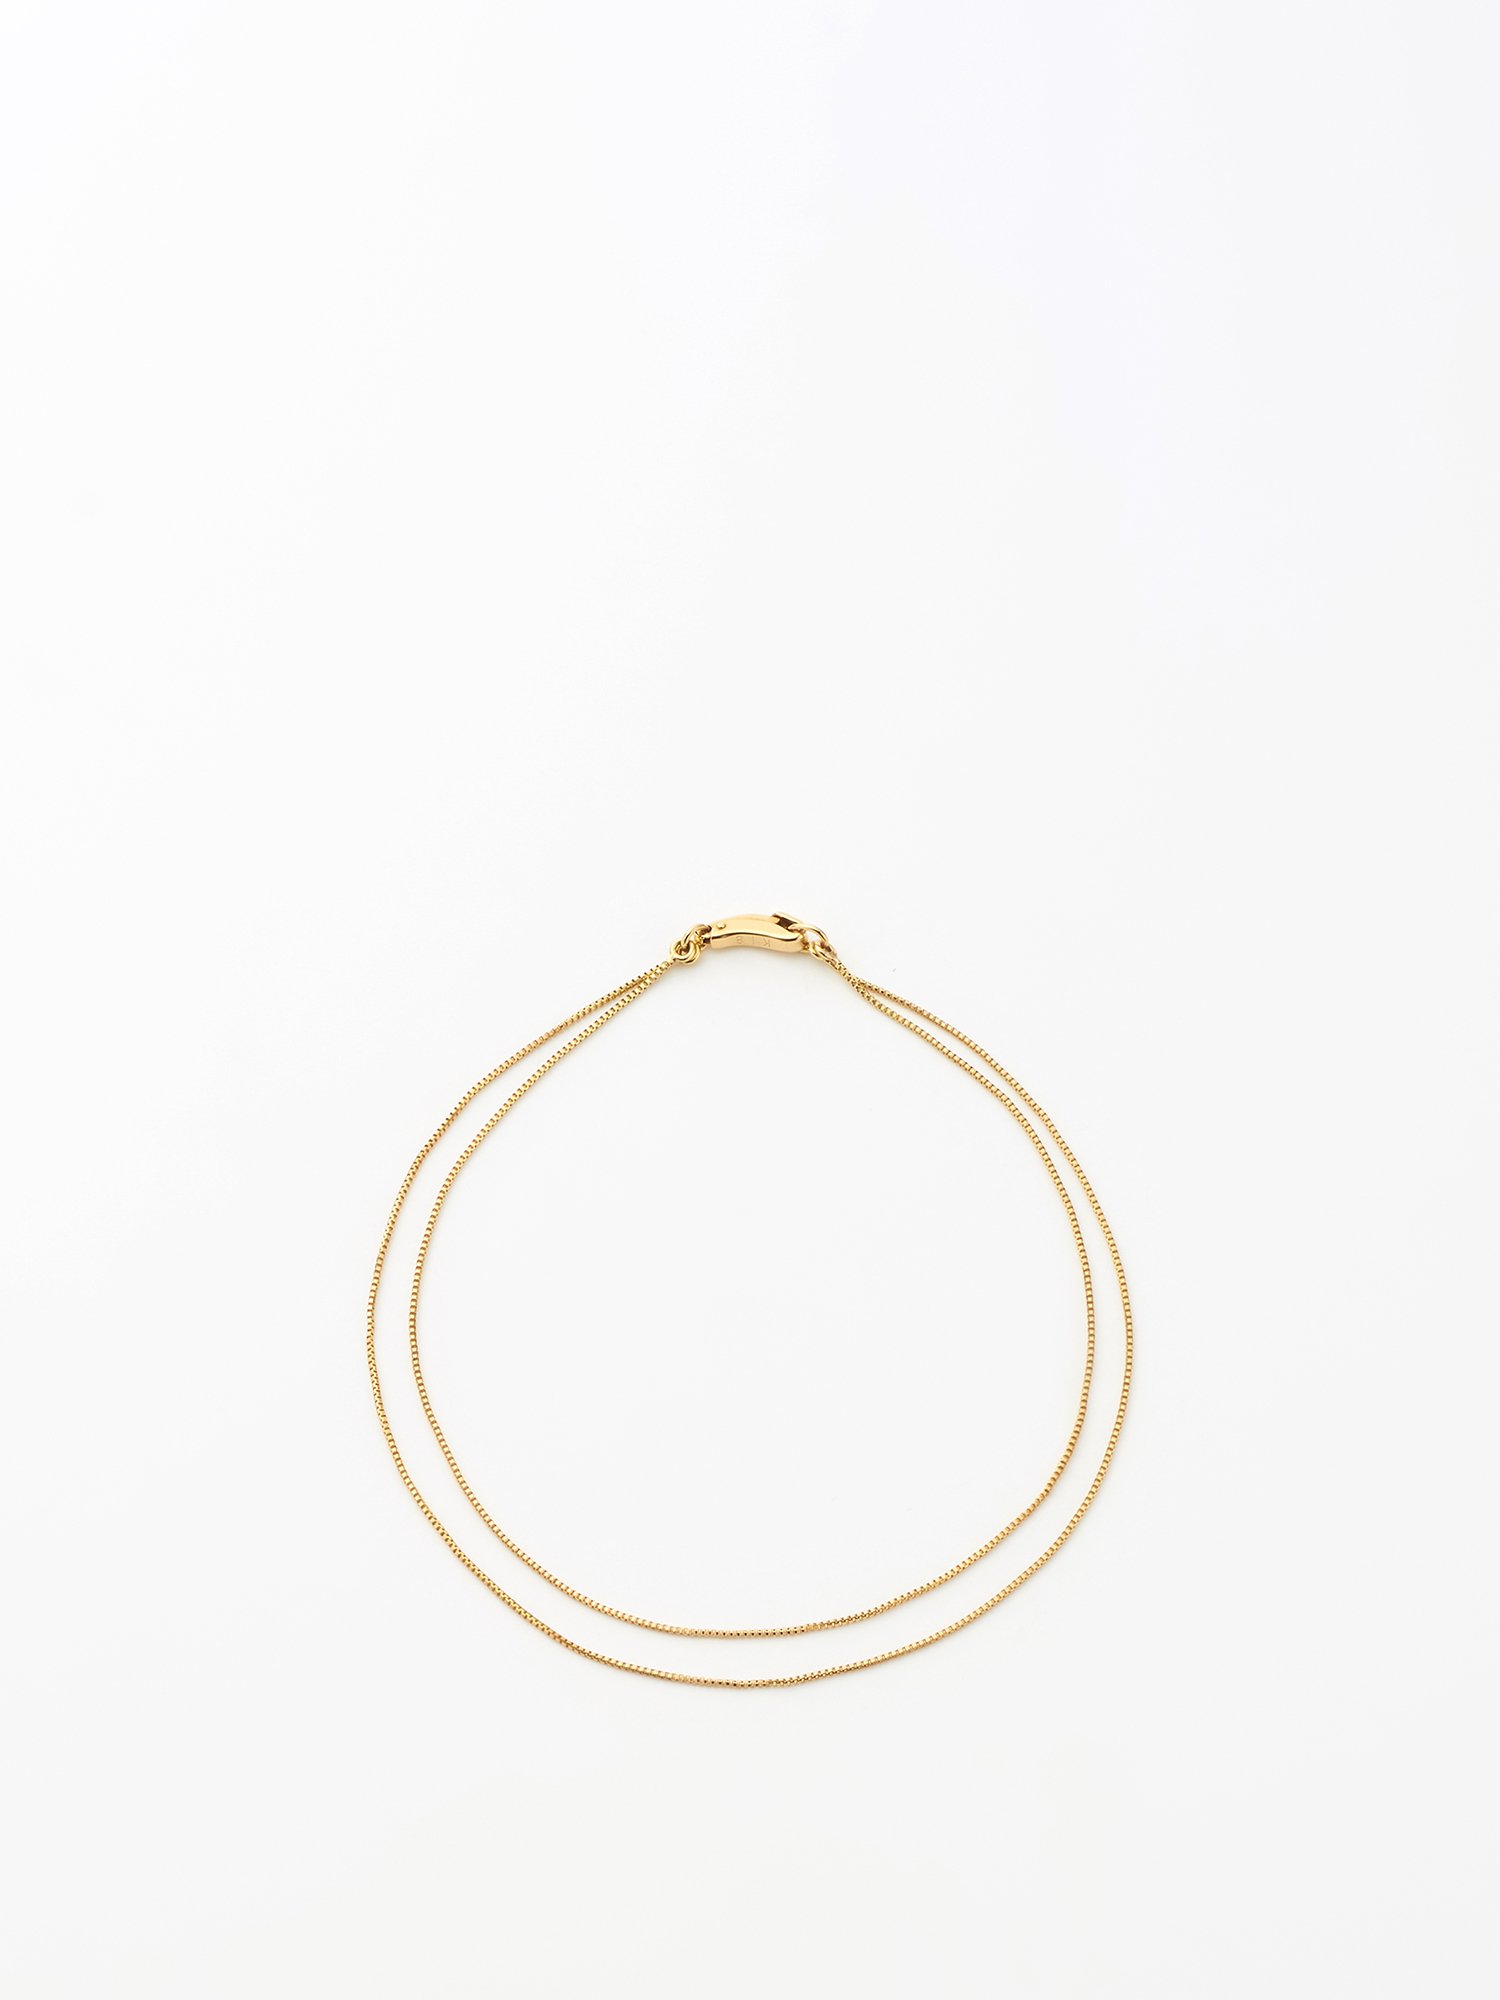  SOPHISTICATED VINTAGE / Gold line bracelet